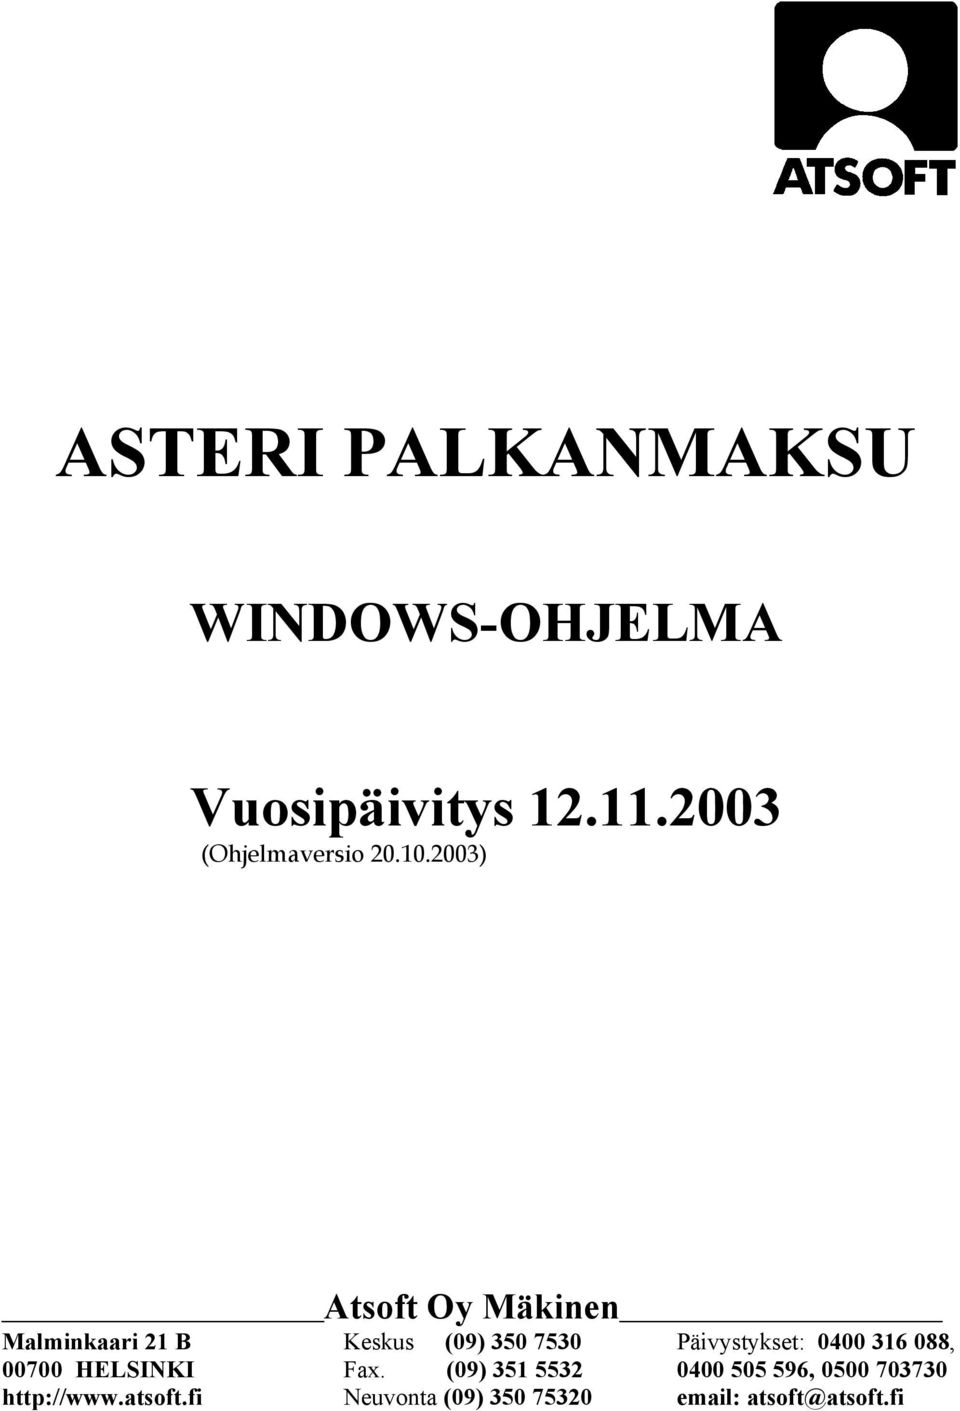 2003) Atsoft Oy Mäkinen Malminkaari 21 B Keskus (09) 350 7530